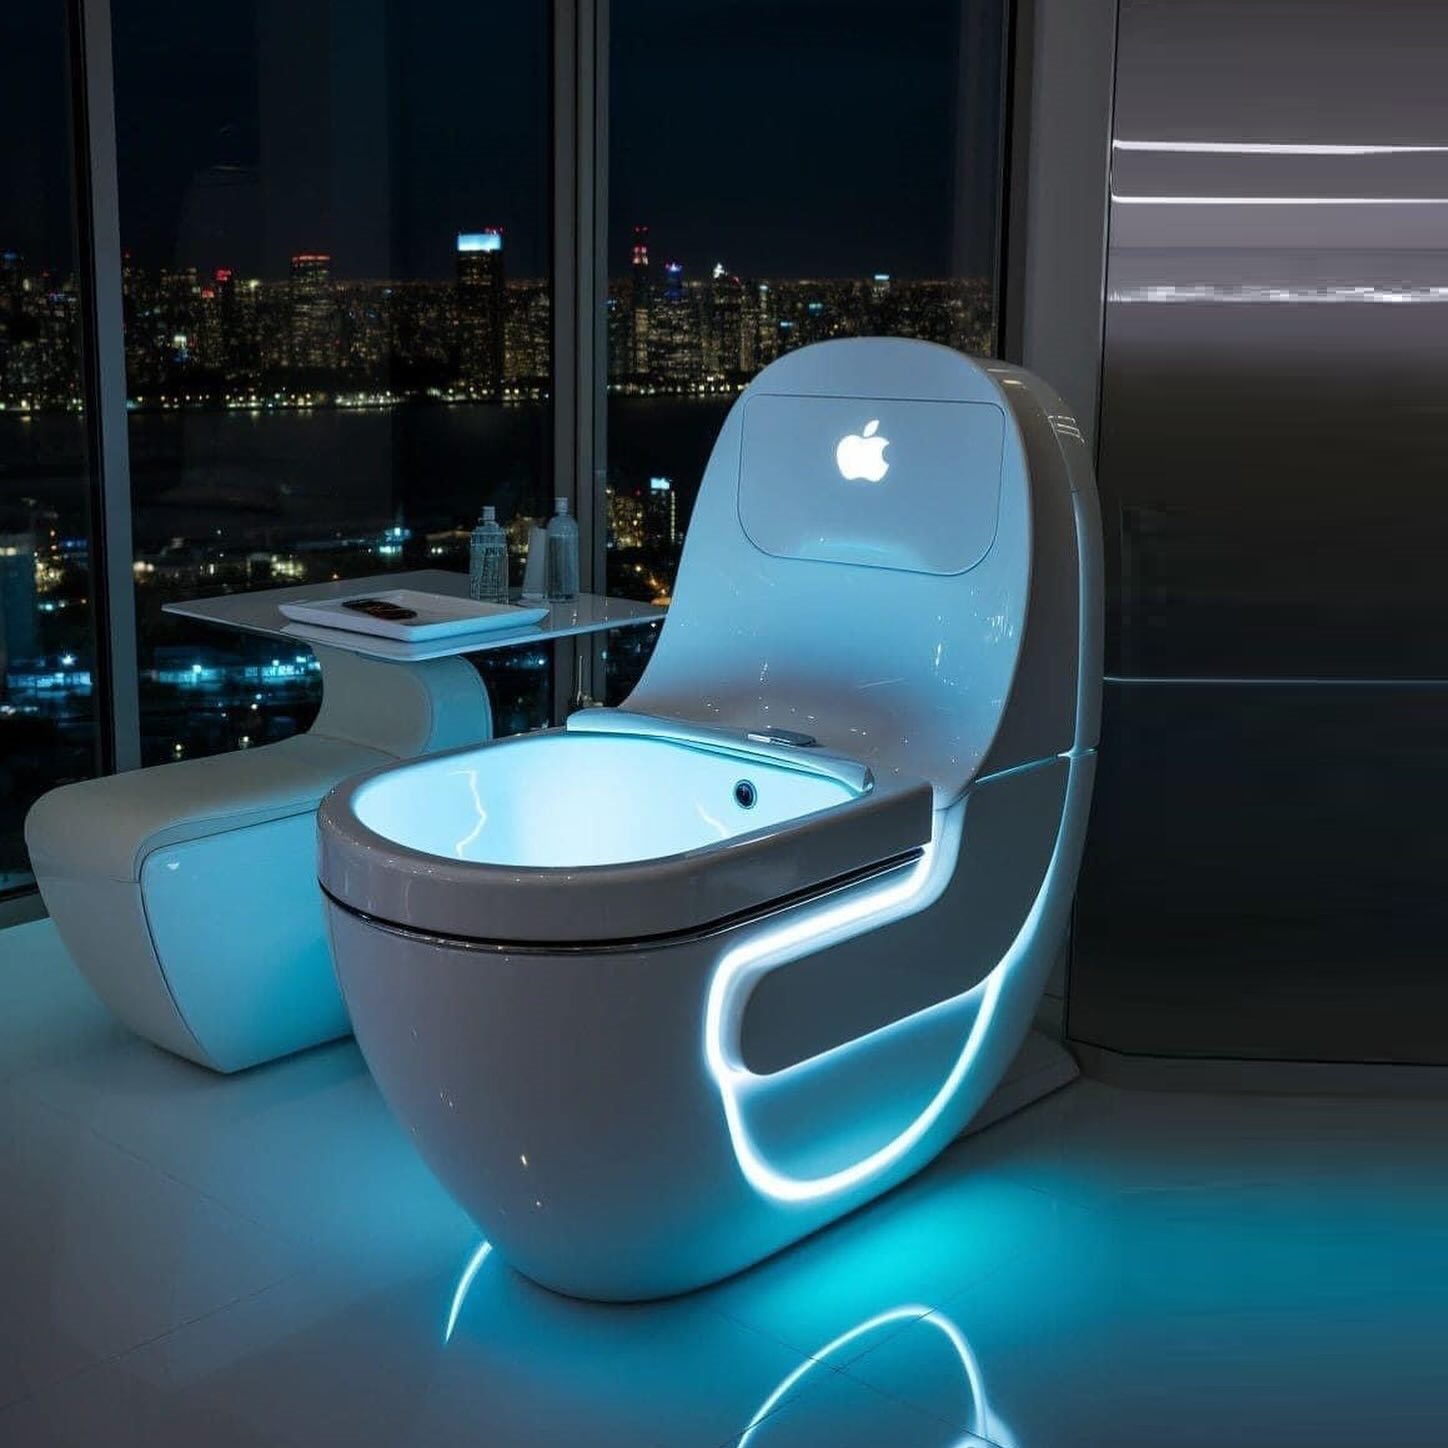 Đây là chiếc bồn cầu thông minh của họ nhà táo - Apple smart toilet